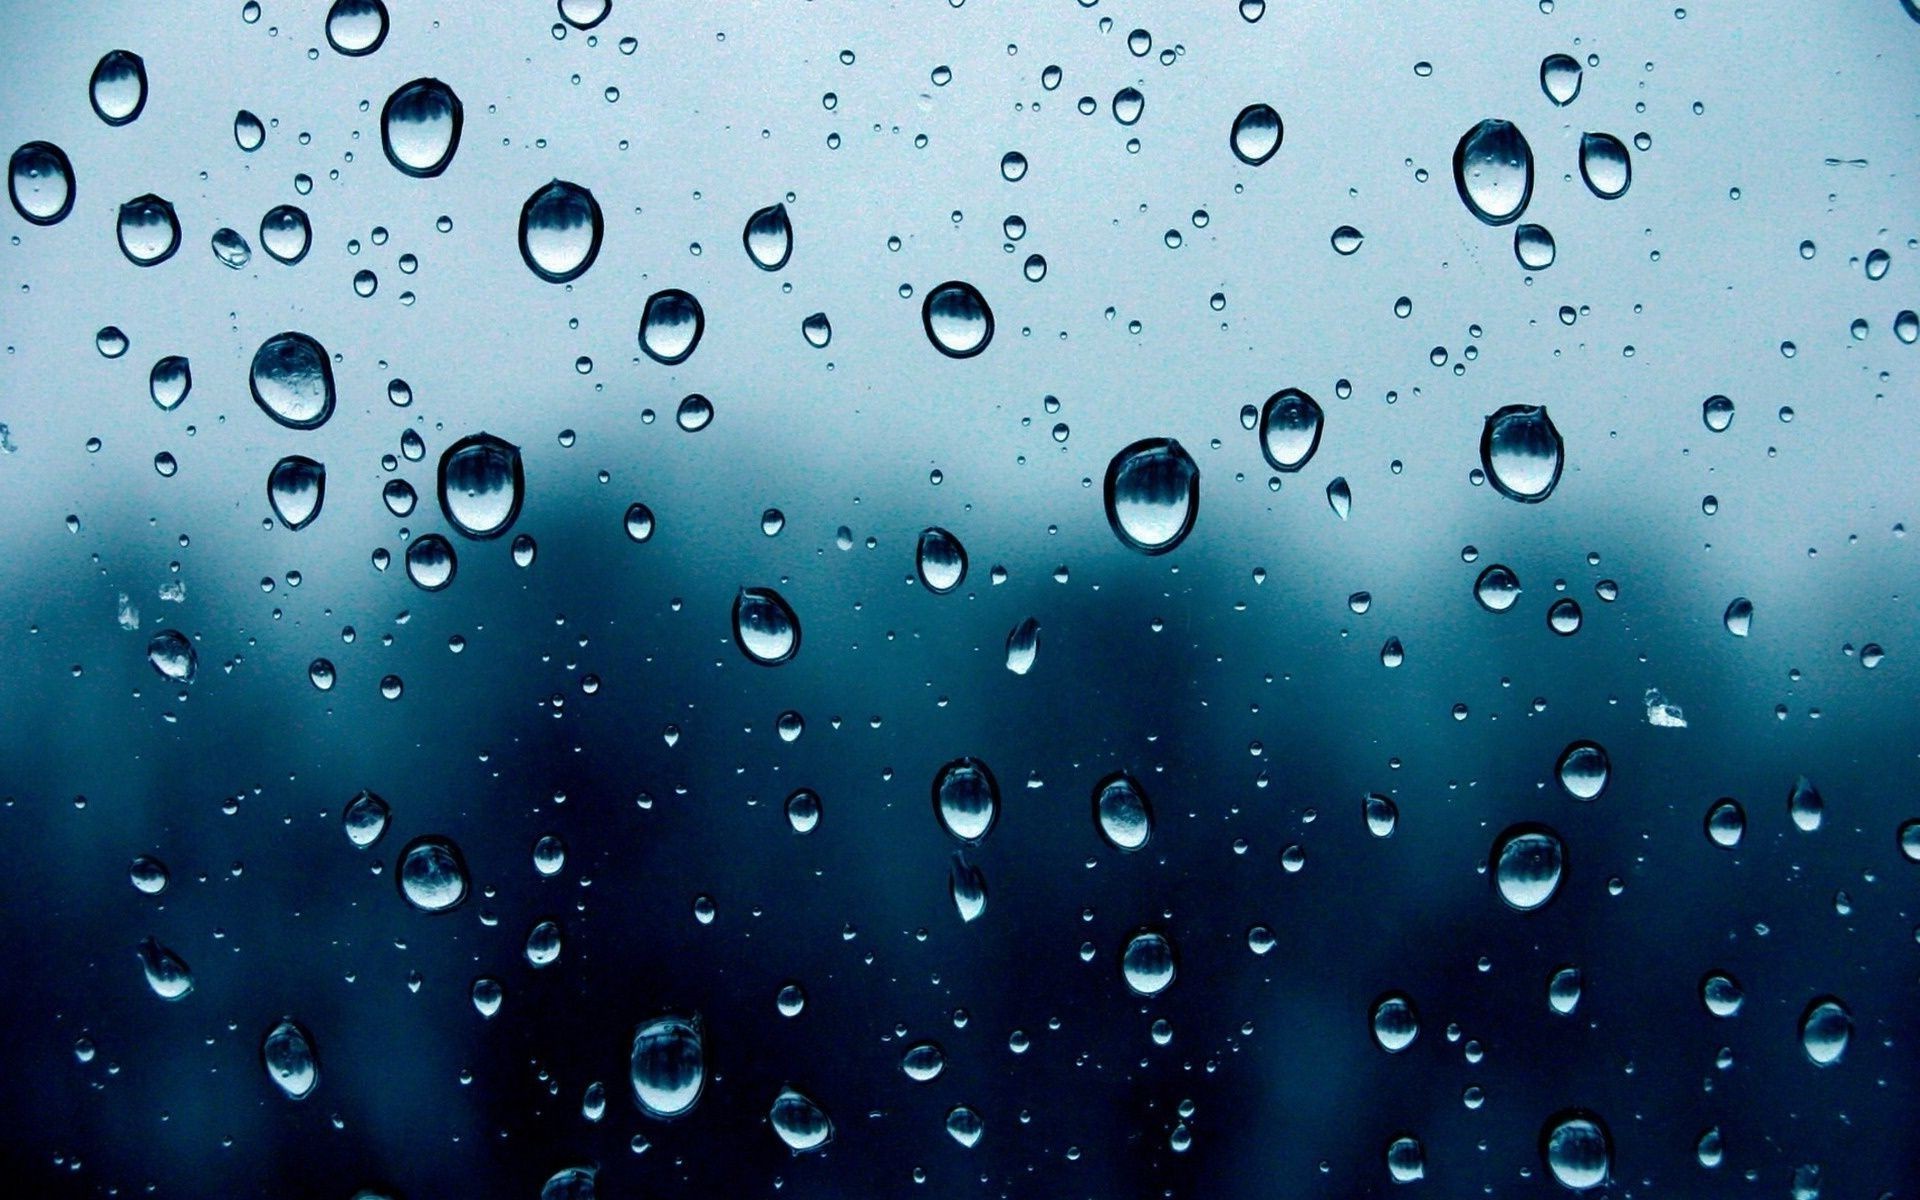 капельки и вода дождь мокрый падение капли росы понятно чистые пузырь дождей всплеск бирюза мыть капли чисто чистота жидкость воды водослива потека